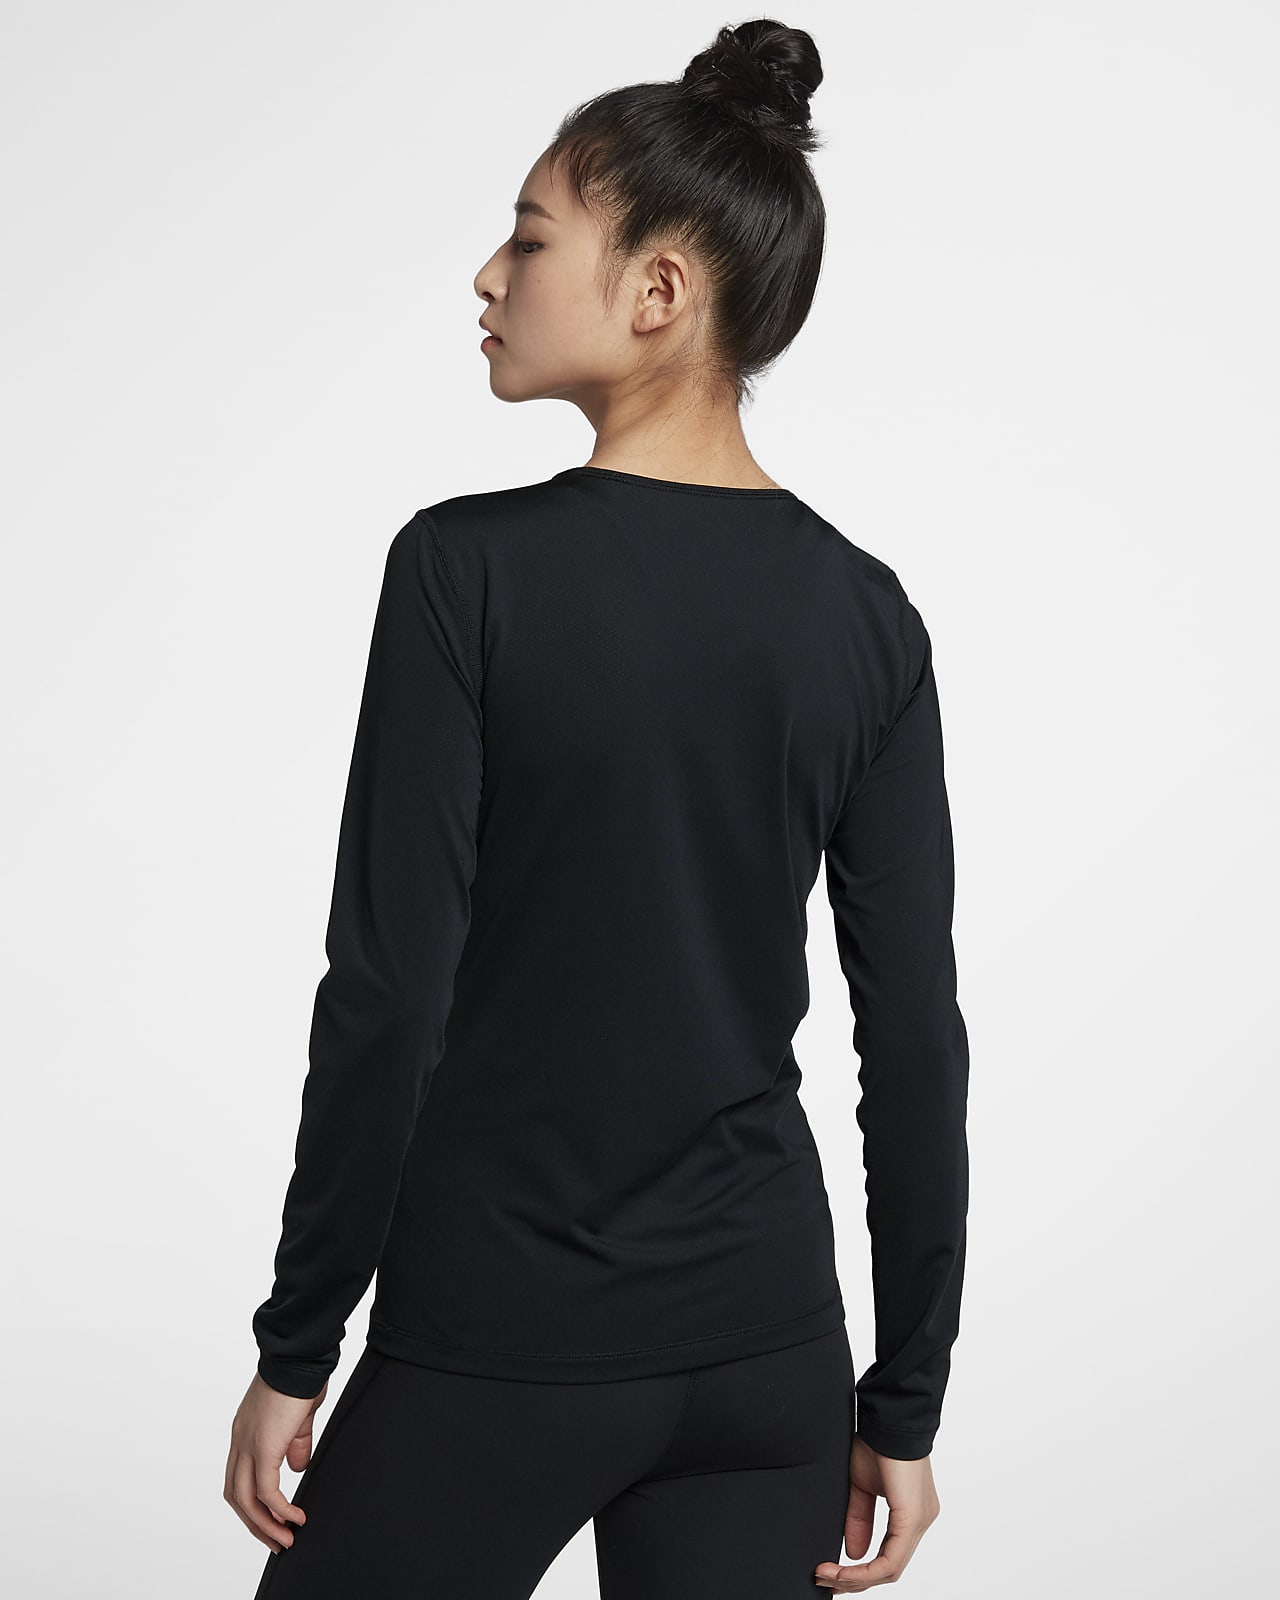 Nike Pro Women's Long-Sleeve Mesh Top 